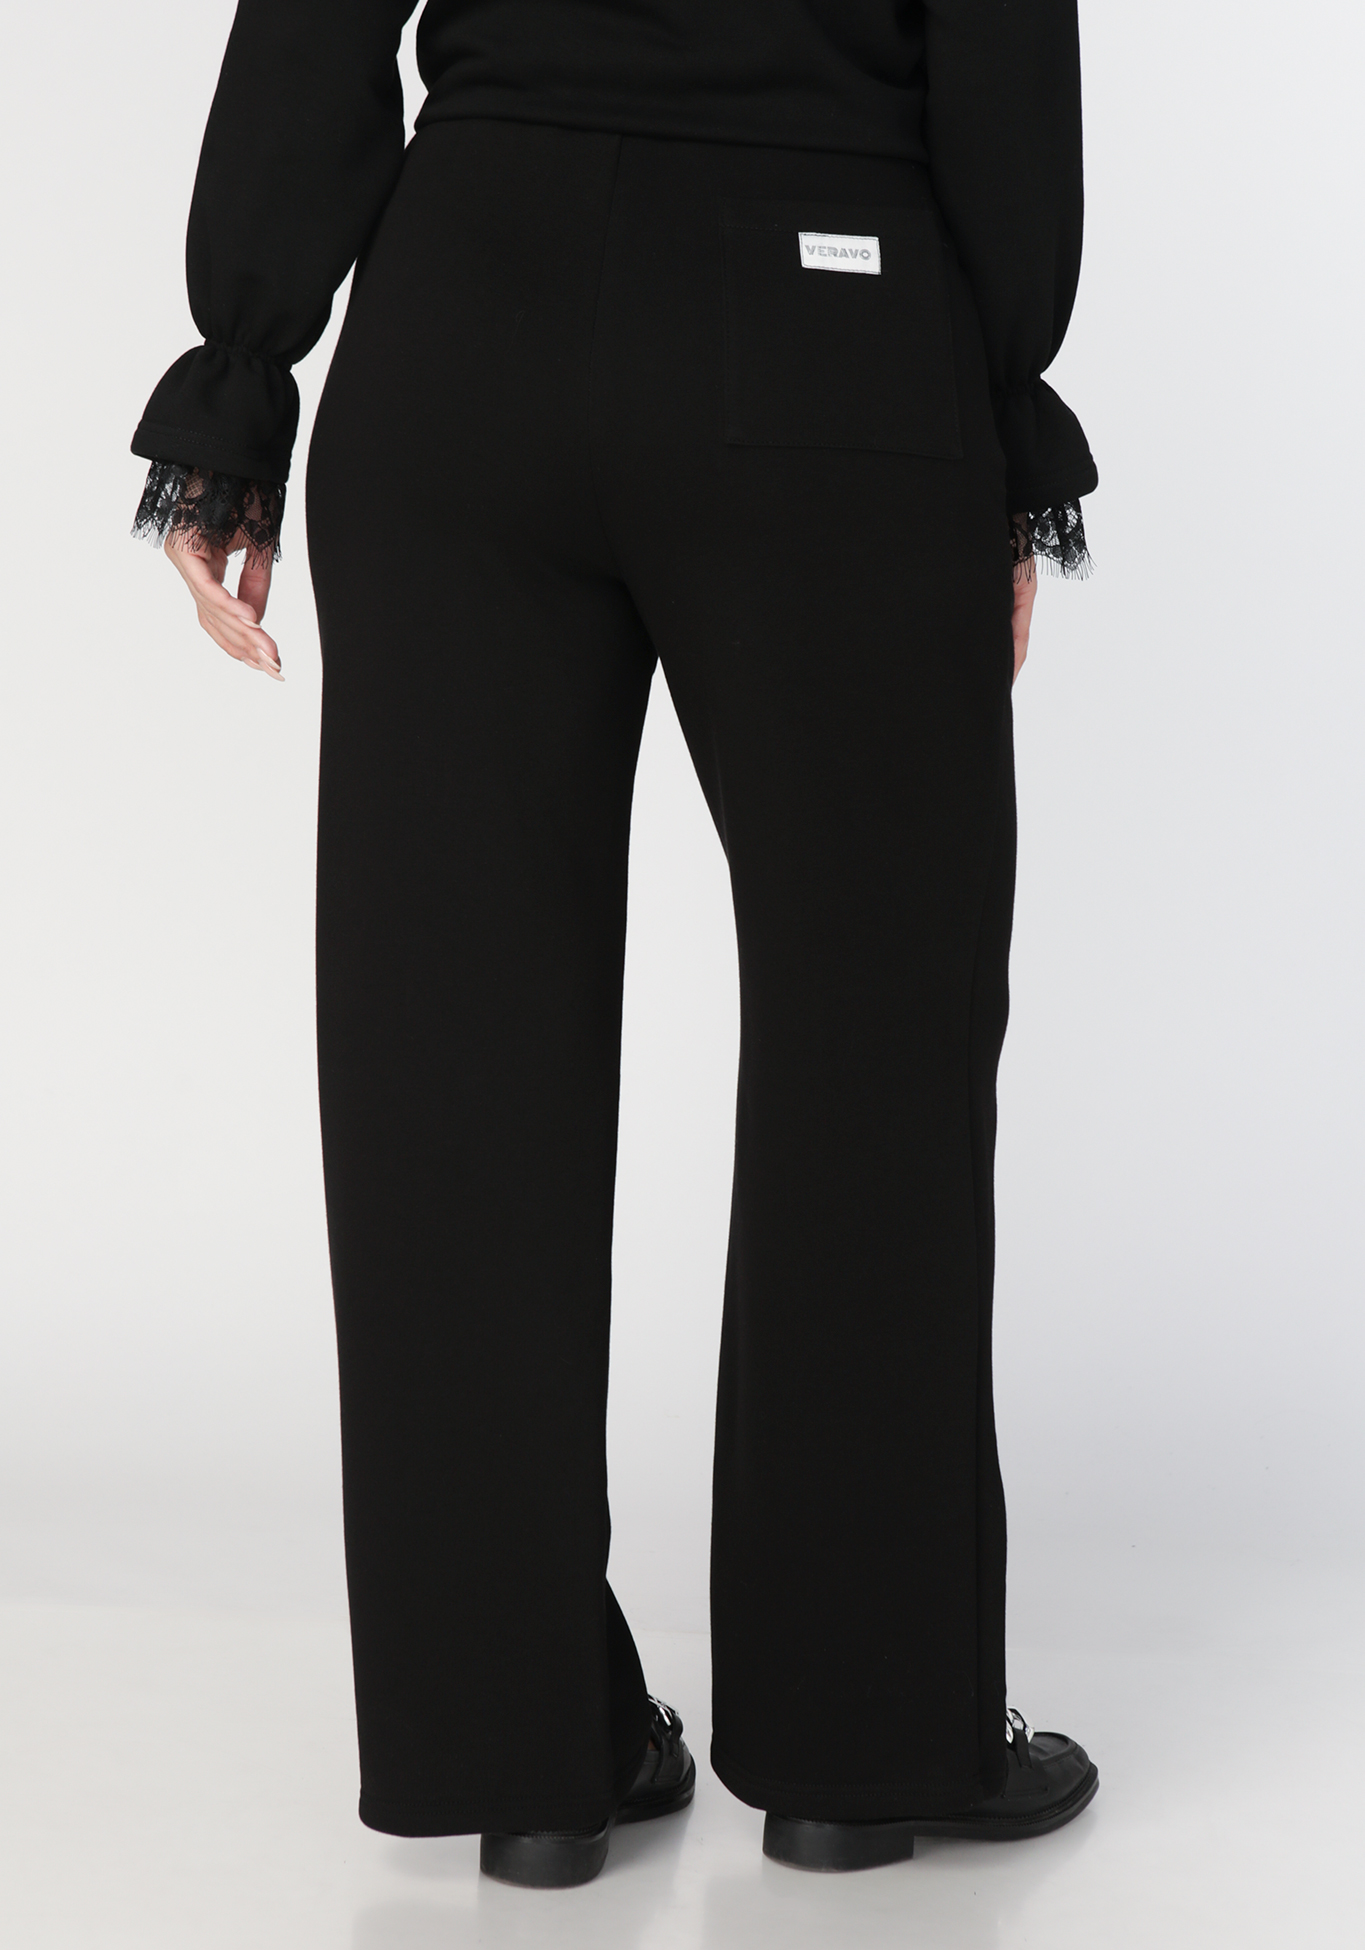 Брюки широкие с накладными карманами сзади VeraVo, размер 50, цвет черный - фото 3